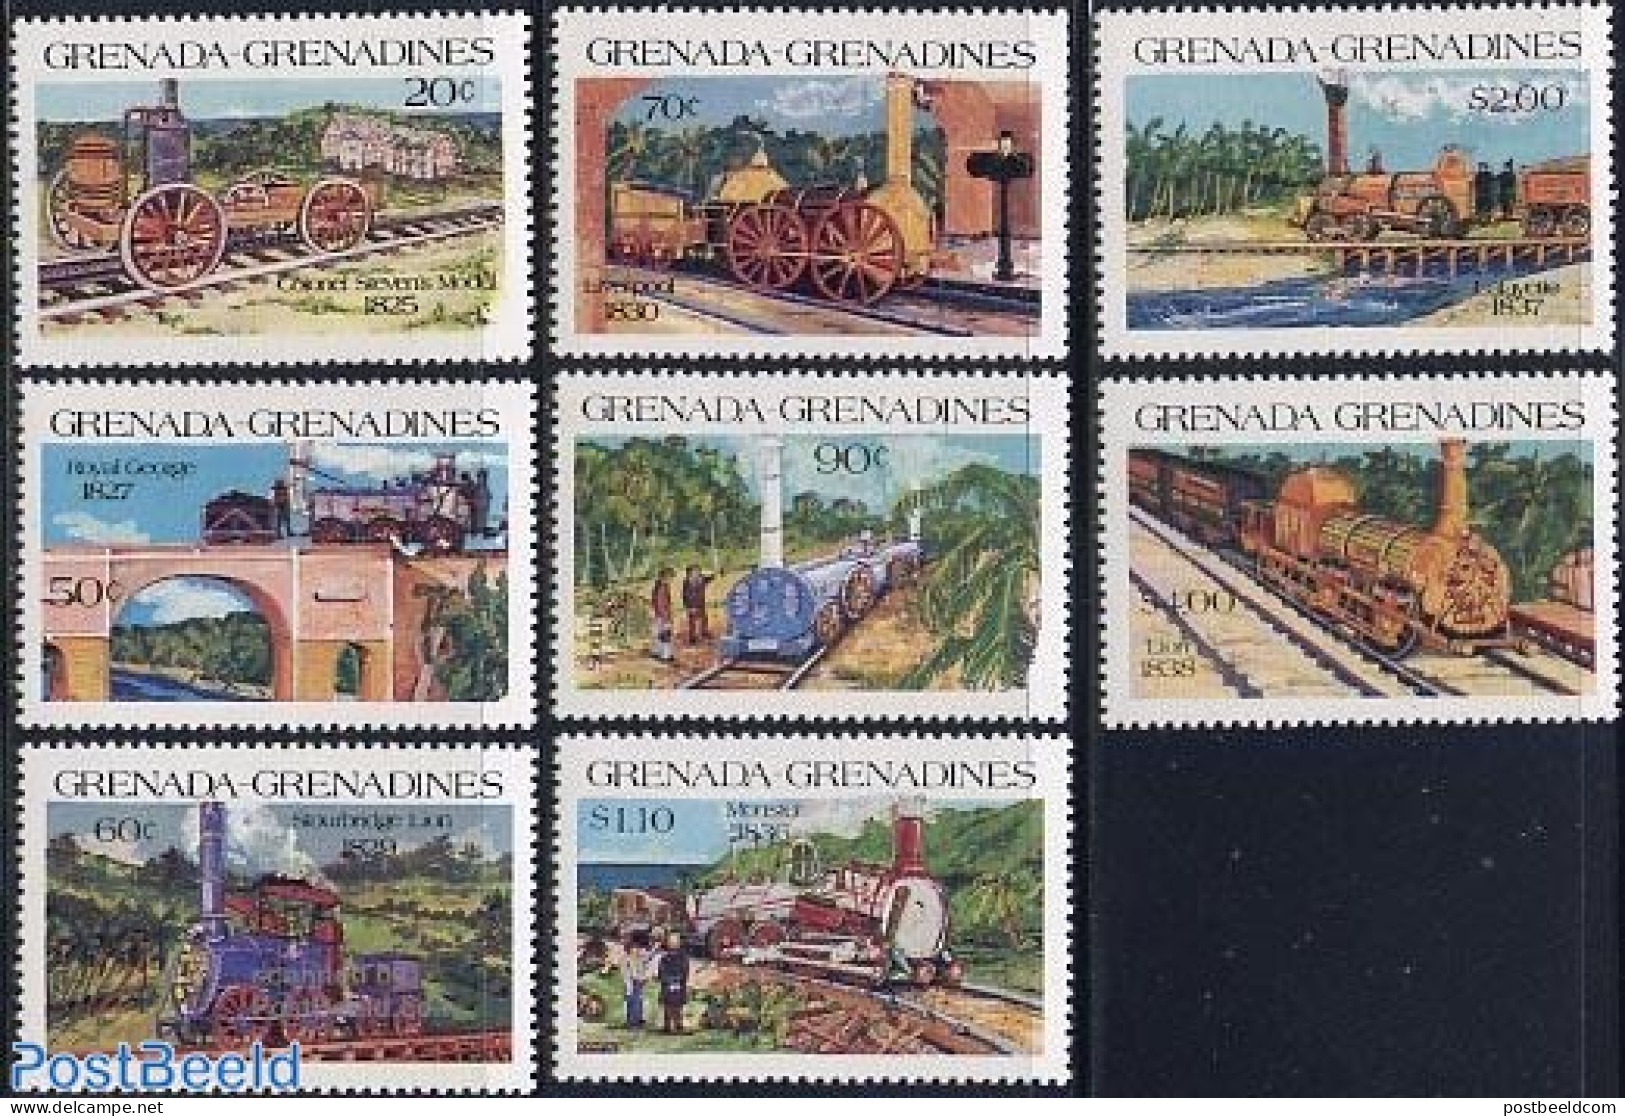 Grenada Grenadines 1984 Locomotives 8v, Mint NH, Transport - Railways - Trains